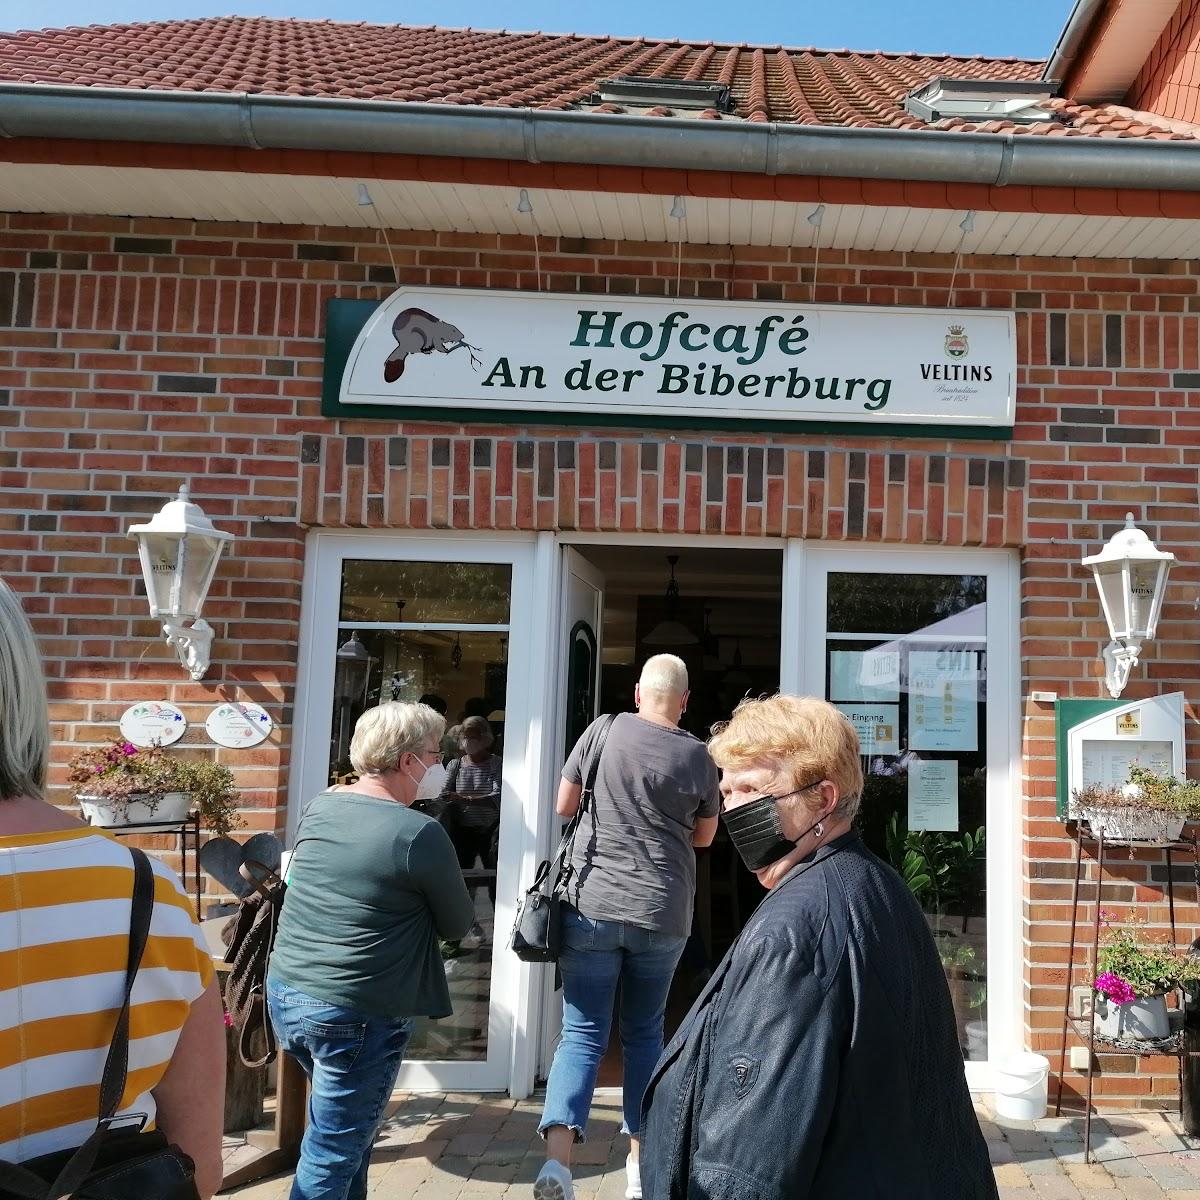 Restaurant "Hermann Schulte Bauernhofcafé" in Haselünne